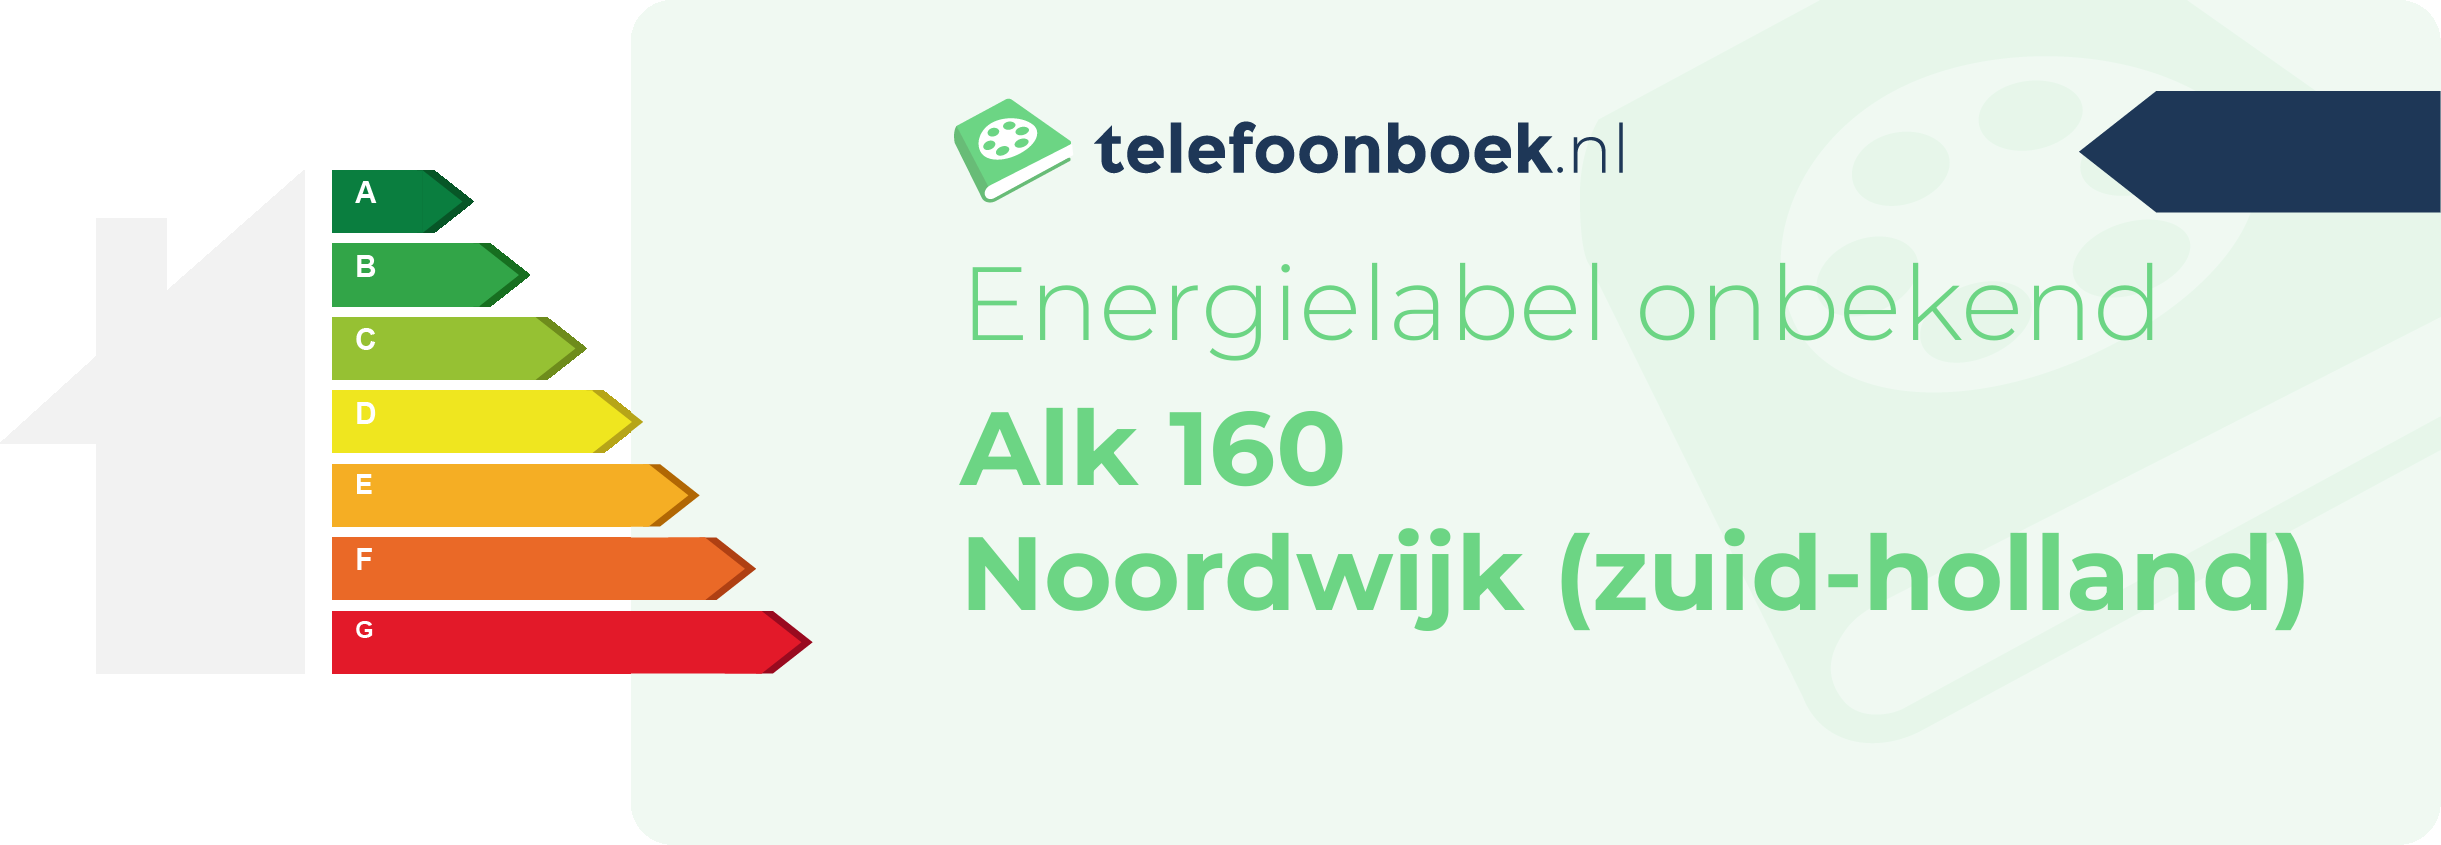 Energielabel Alk 160 Noordwijk (Zuid-Holland)